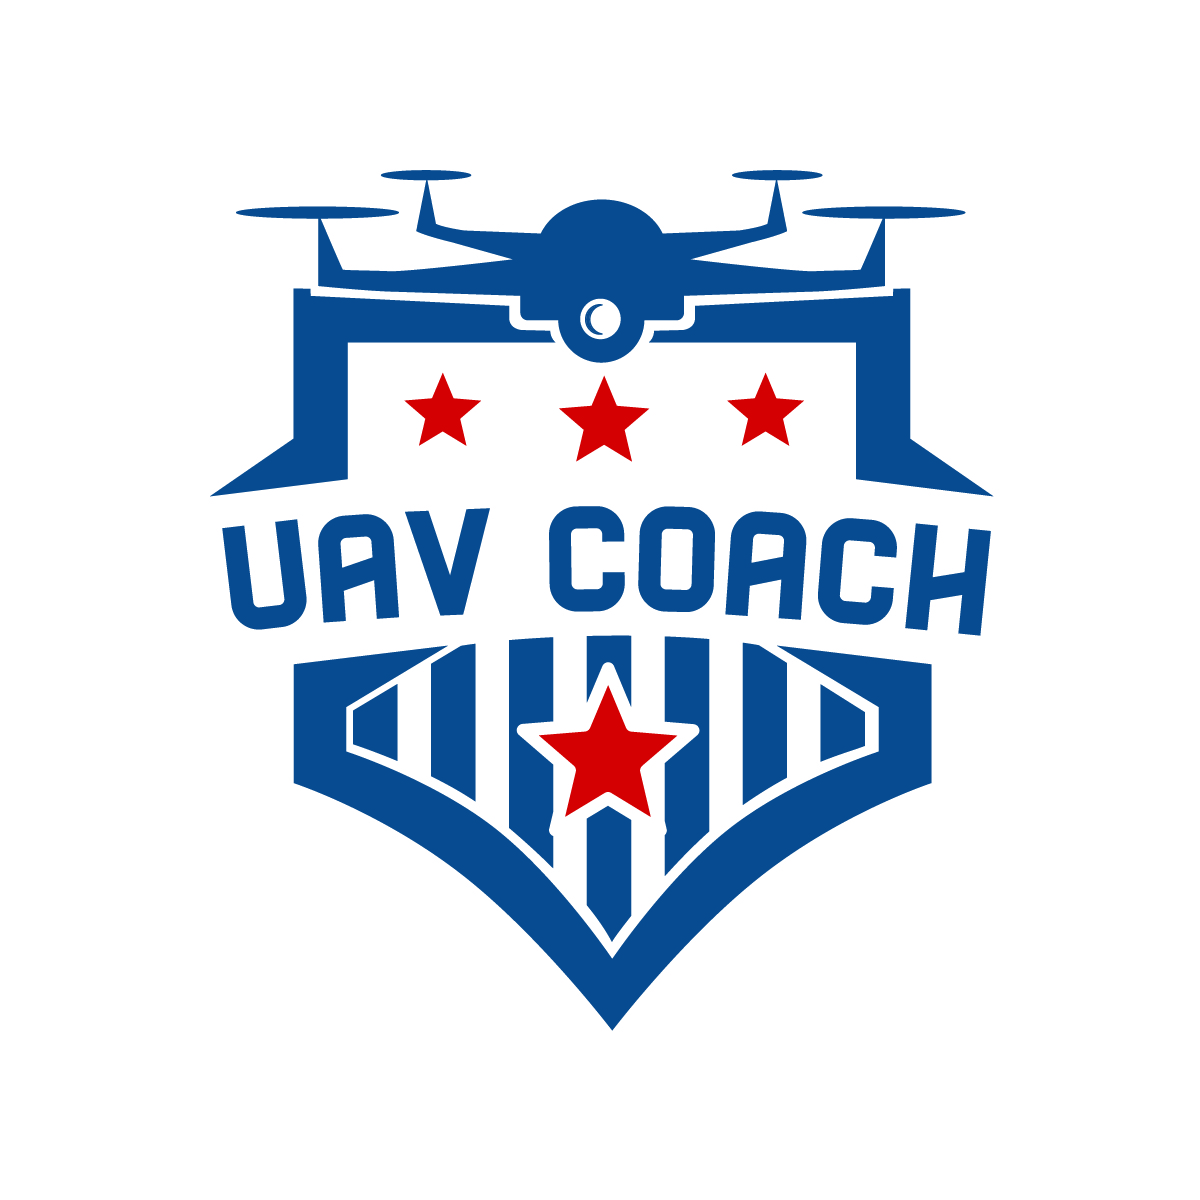 UAV Coach